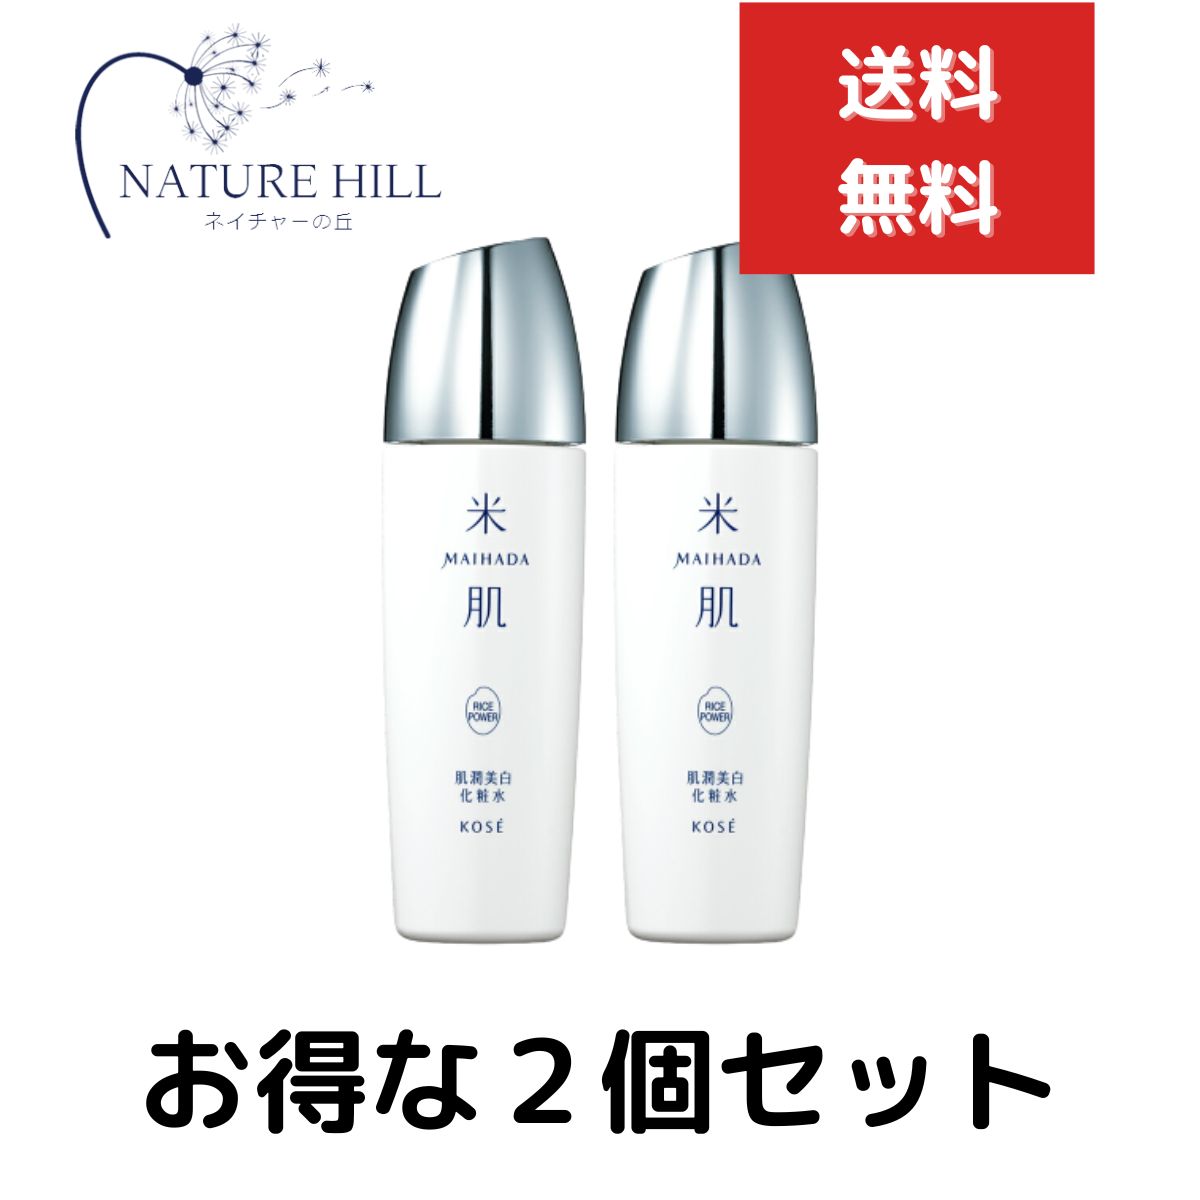 米肌 化粧水 米肌(MAIHADA) 肌潤美白化粧水 本体 しっとり 120ml 2個セット 化粧水